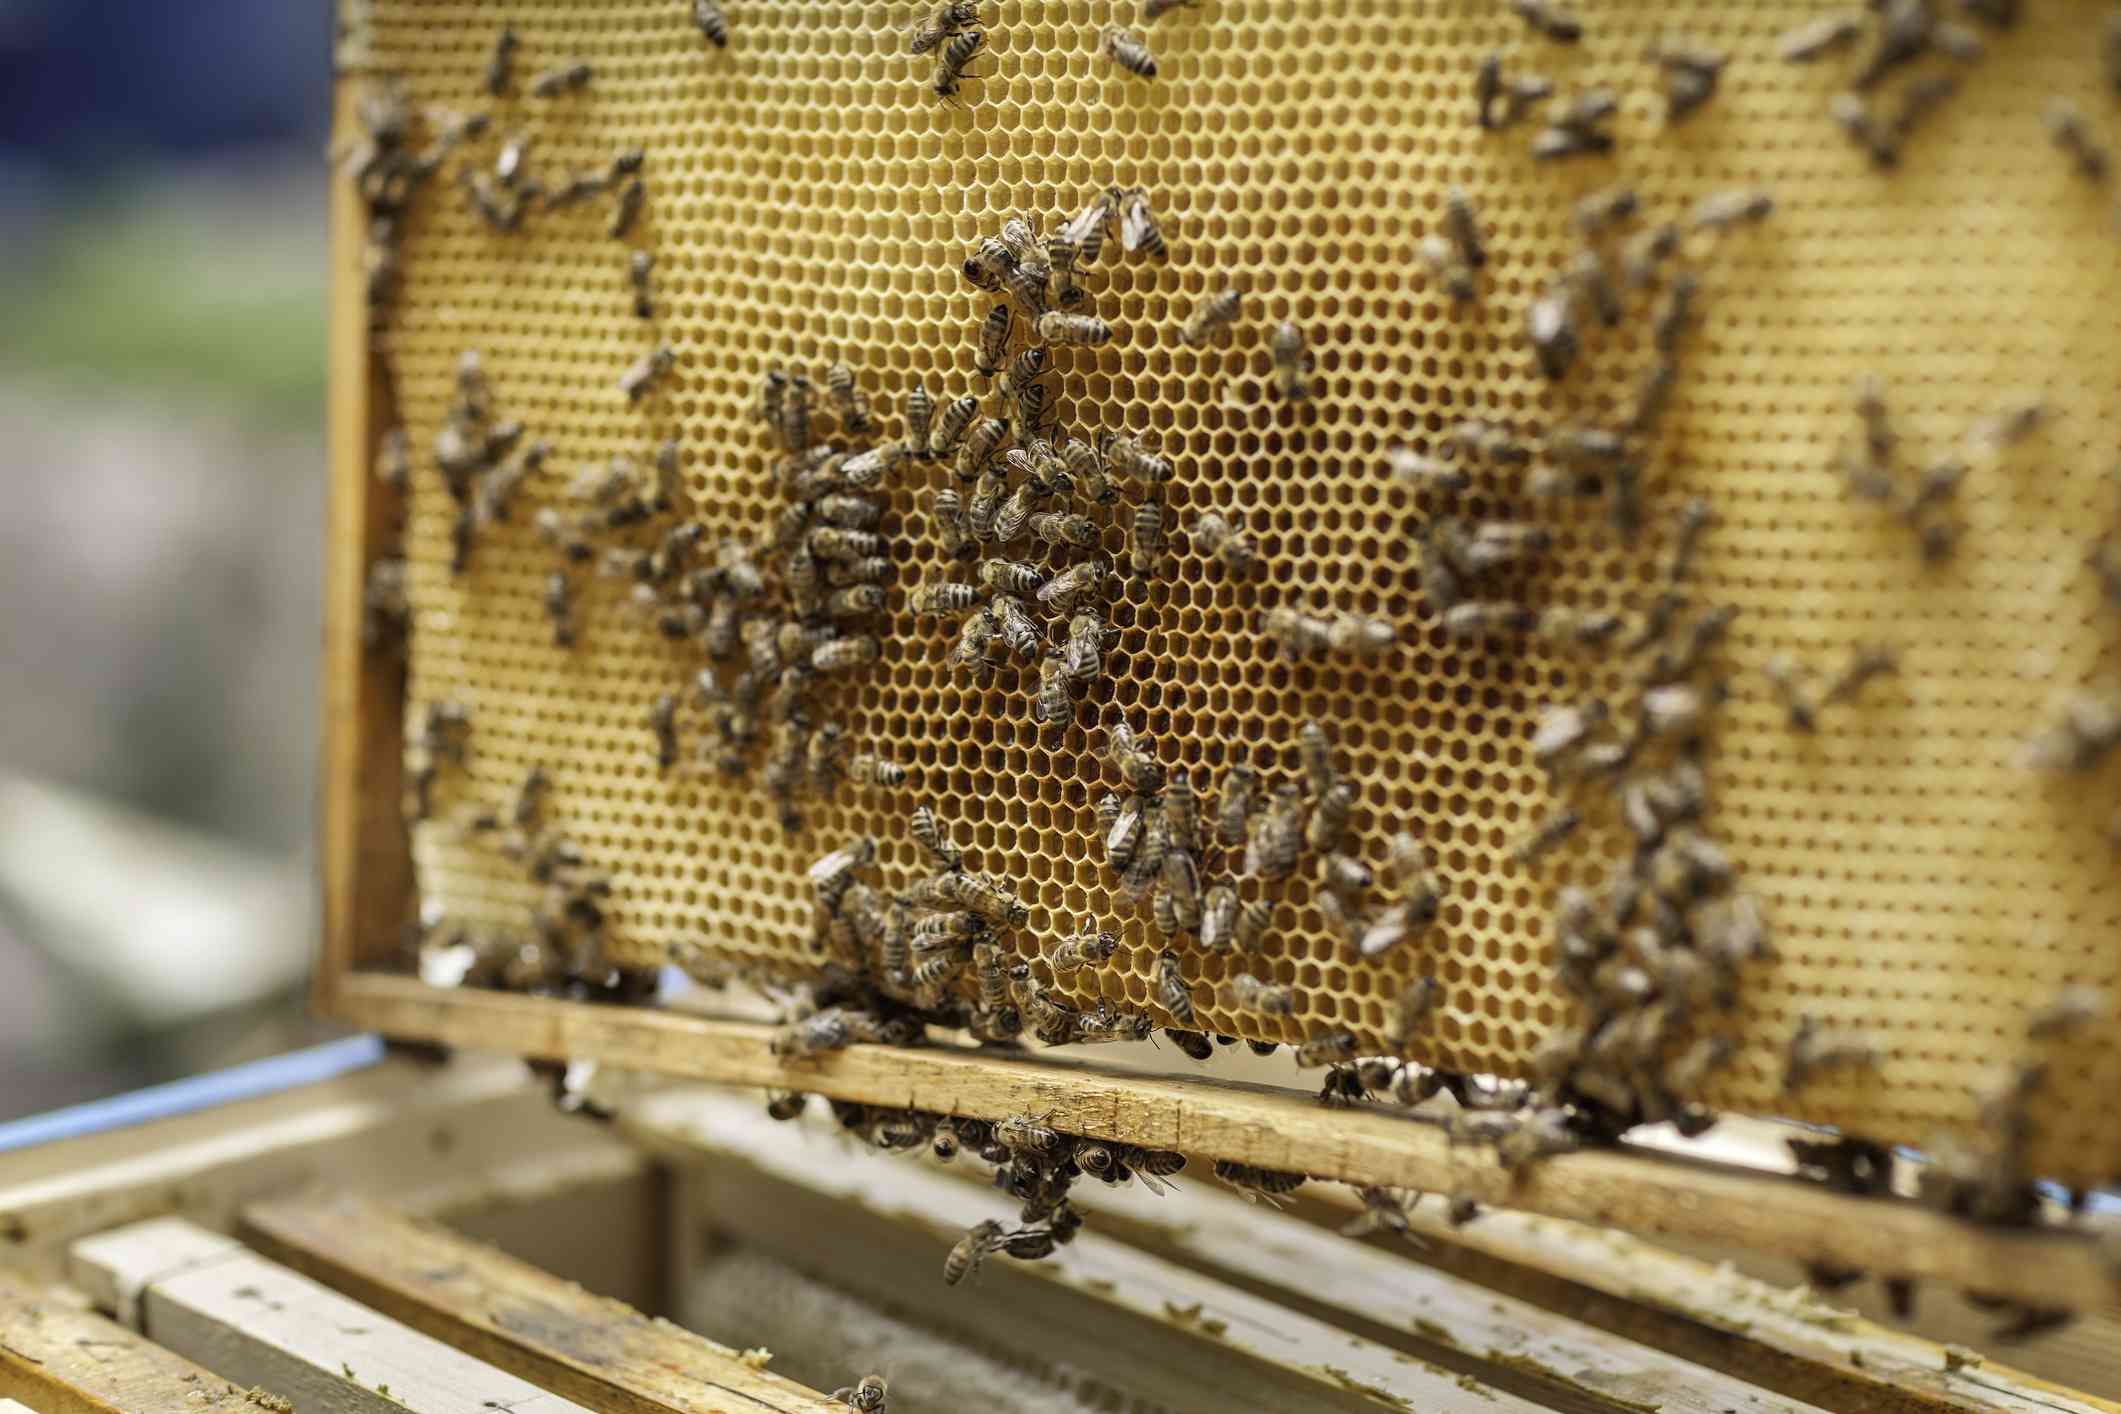 蜜蜂在蜂巢